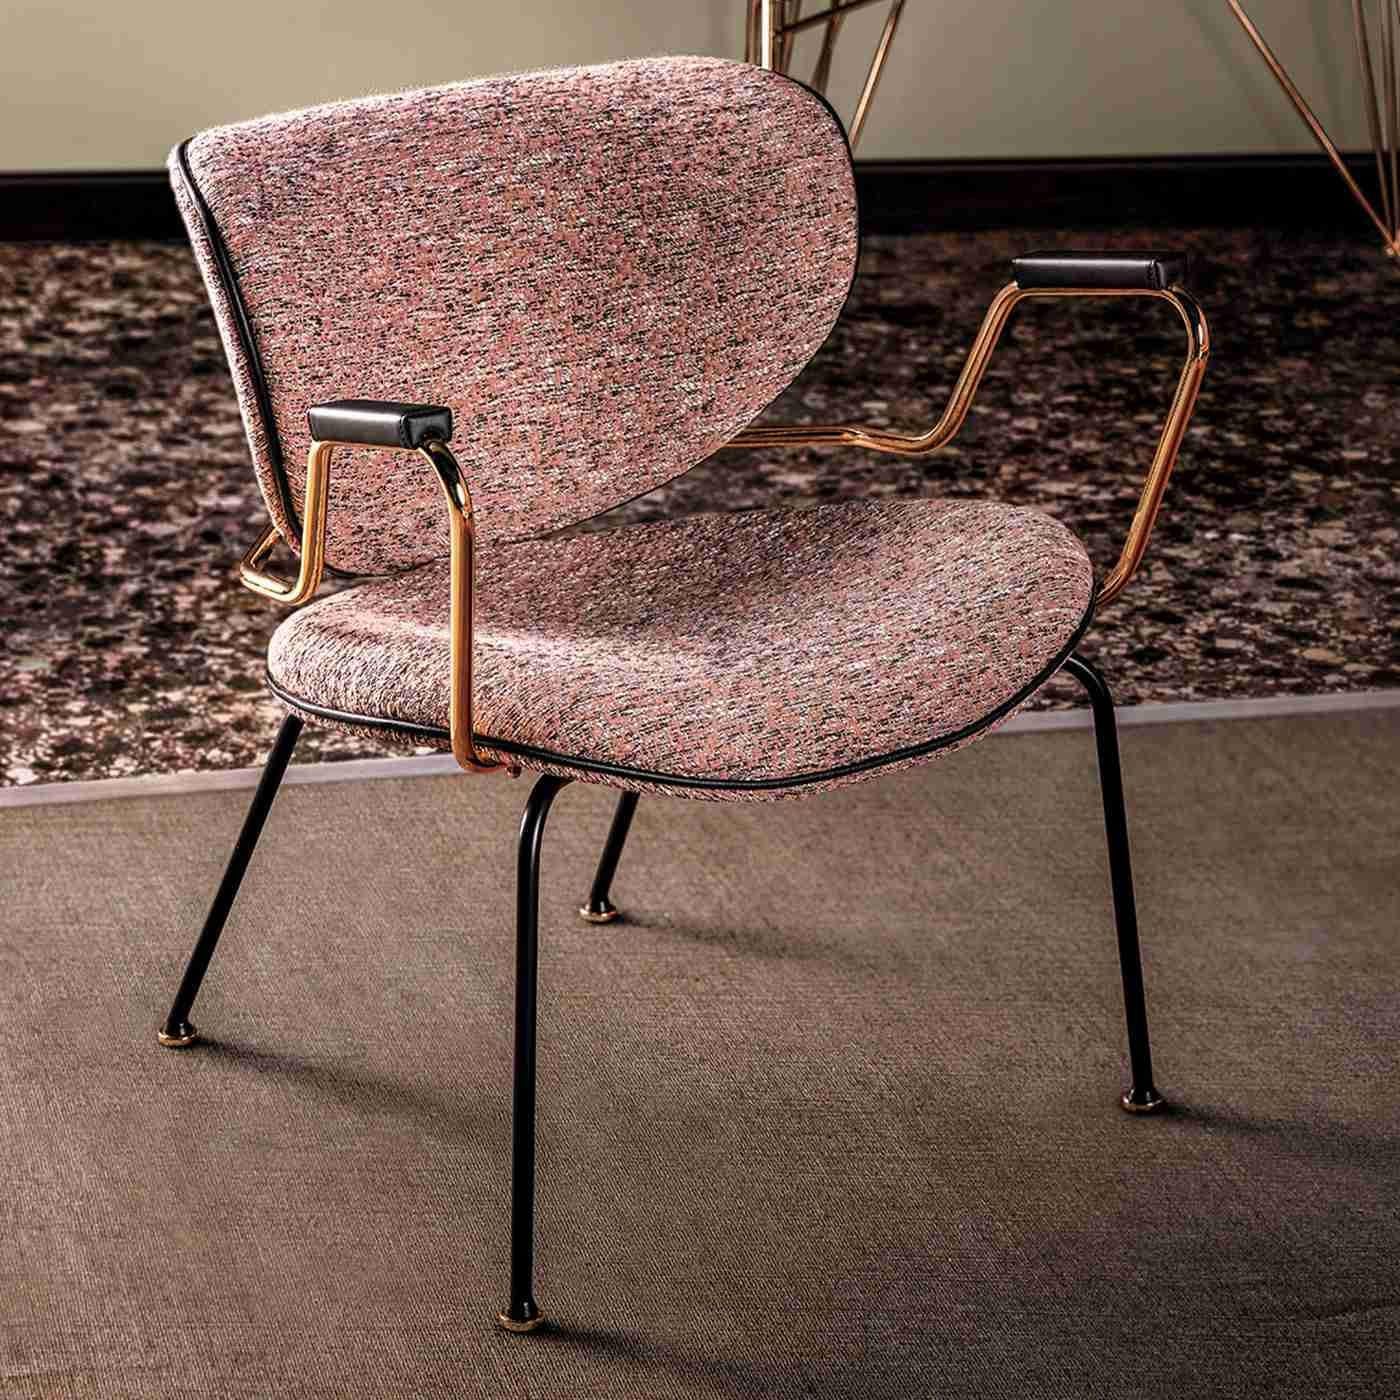 Dieser Stuhl besticht durch sein klares Design, das durch Armlehnen aus Stahl mit polierter Goldoberfläche bereichert wird. Er besteht aus einem mattschwarzen Metallgestell und einer geschwungenen Sitzfläche und Rückenlehne aus Buchenholz, die mit